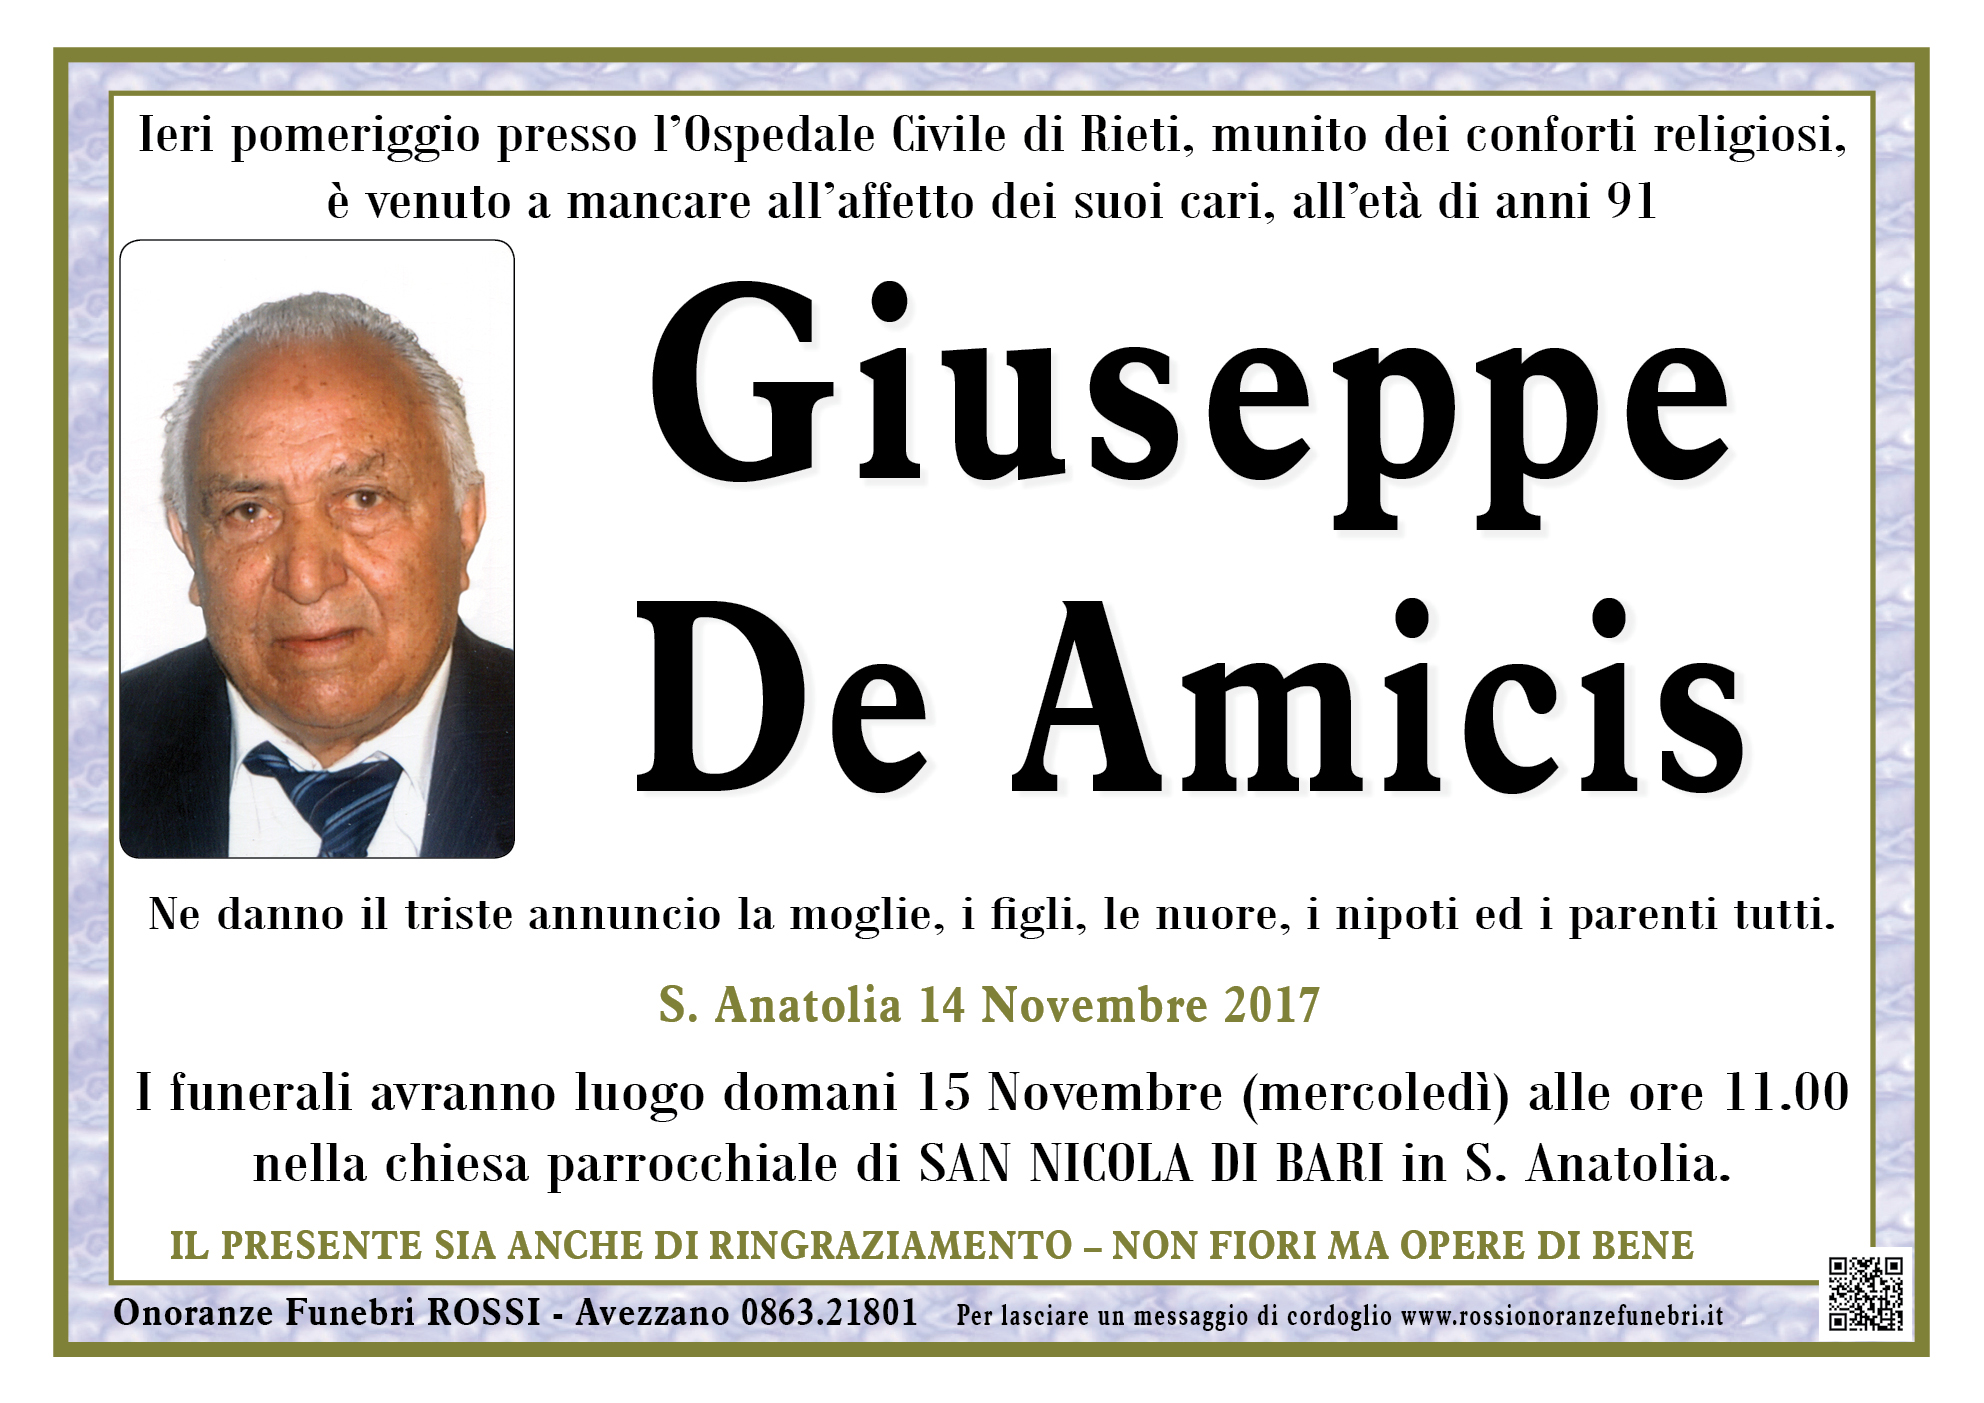 Giuseppe Antonio De Amicis